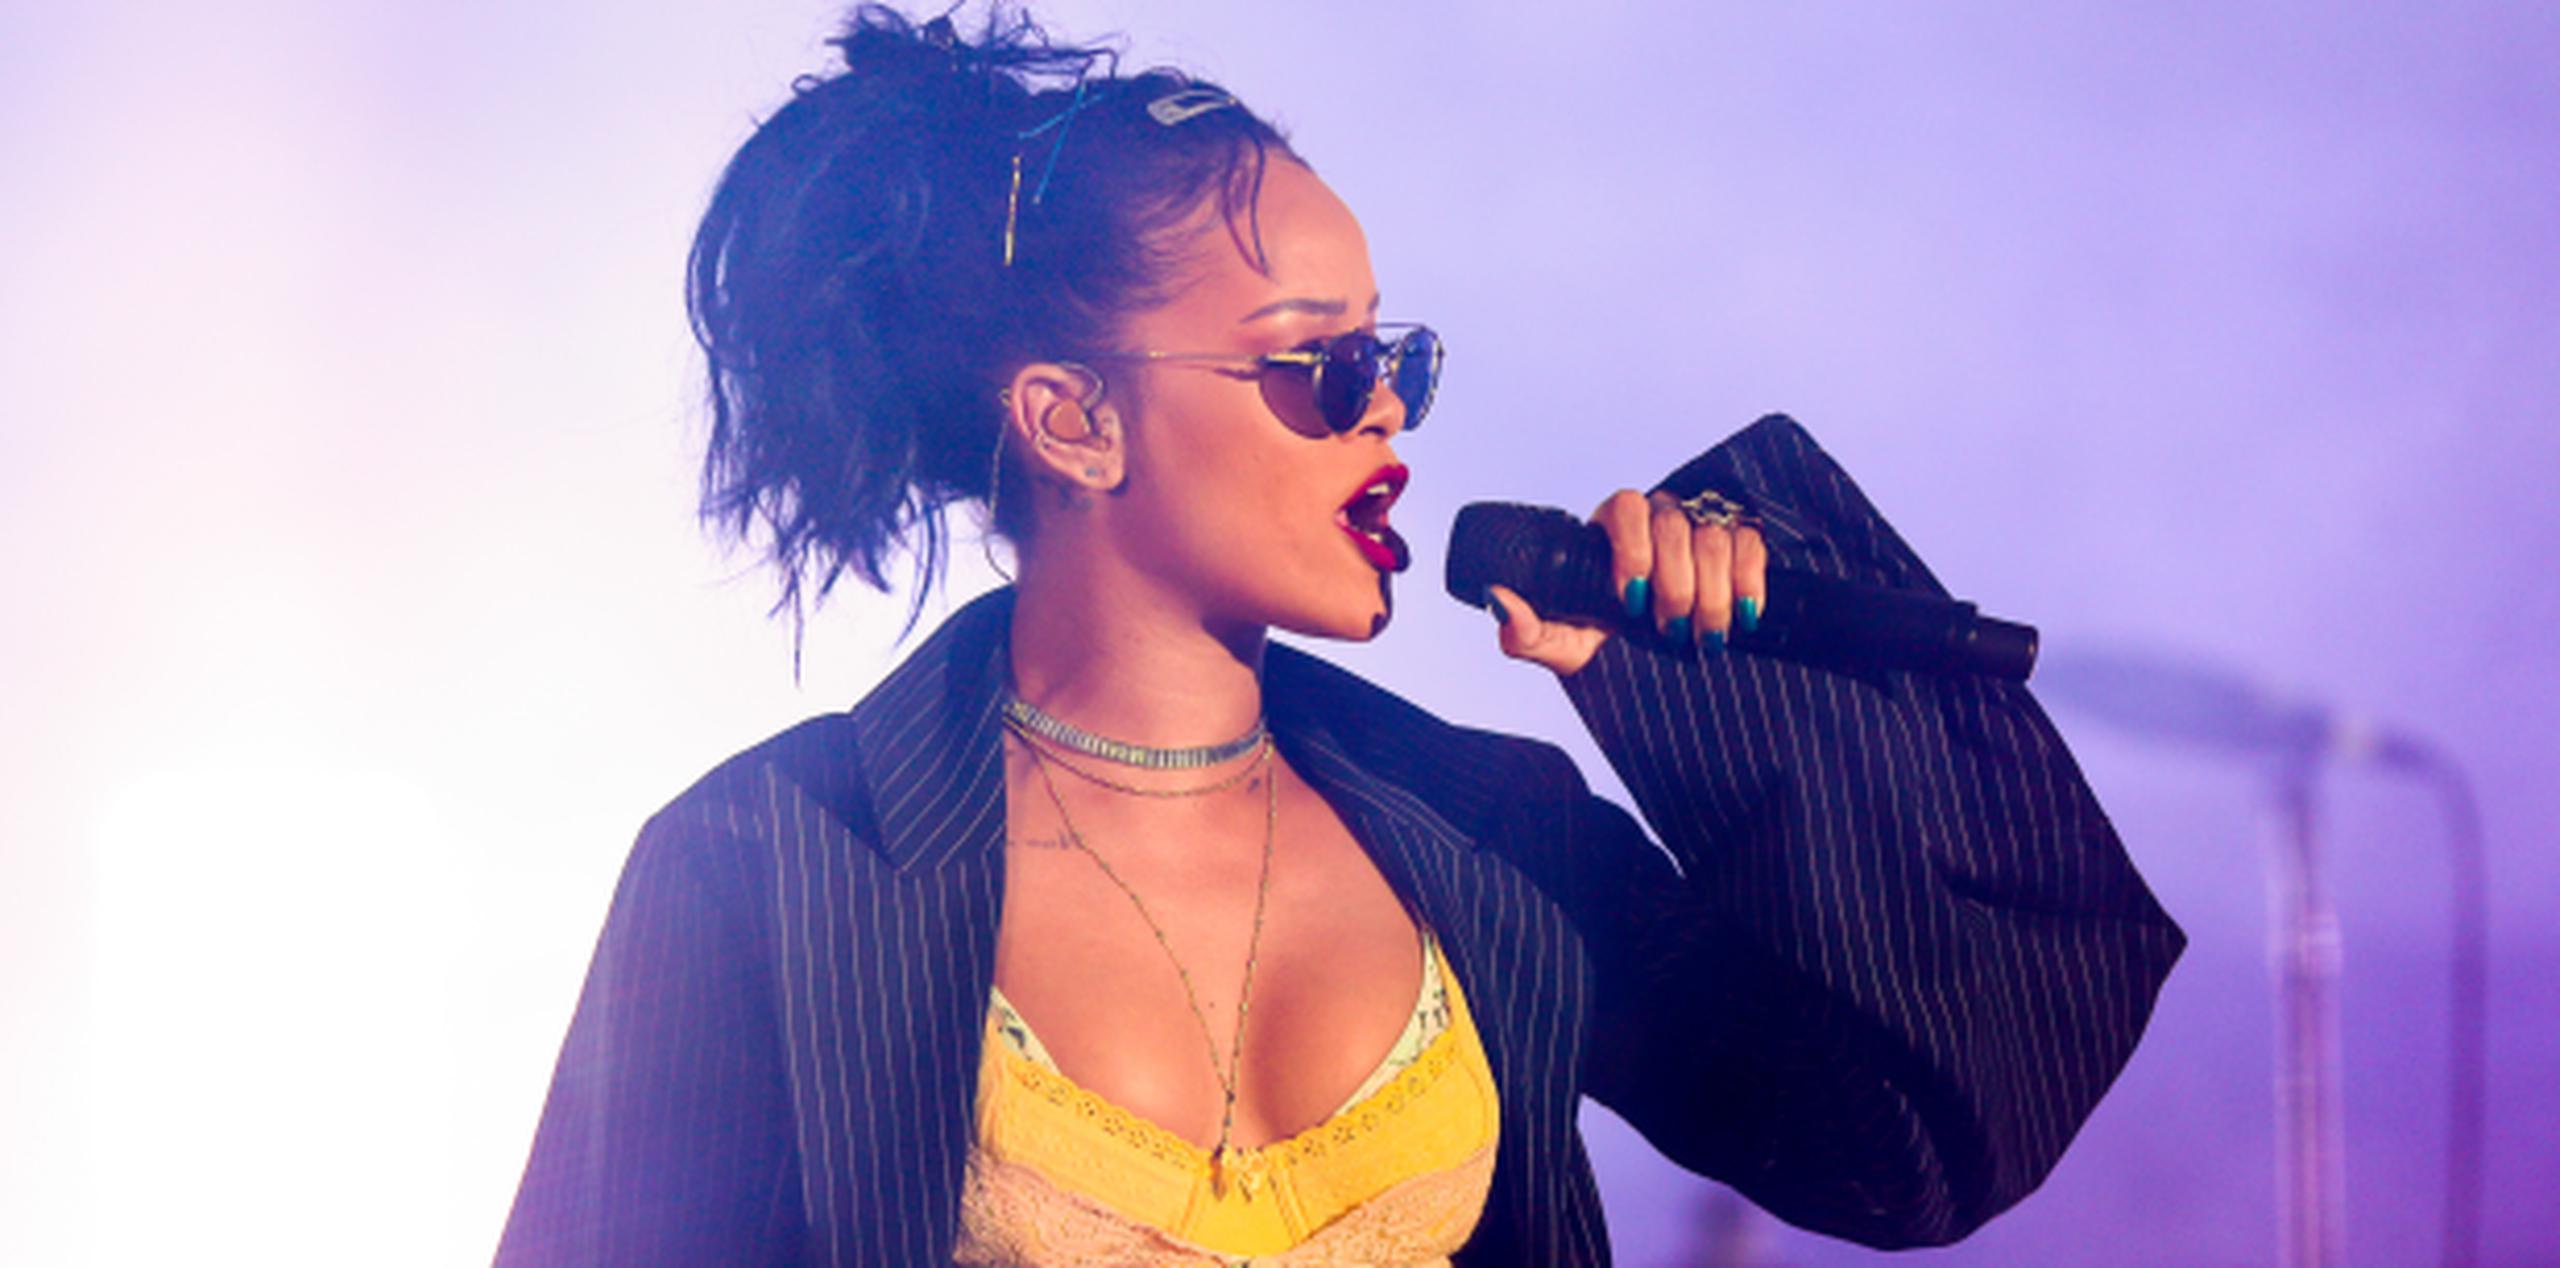 "Creo que diseñar forma parte de ser creativo", dijo Rihanna. (The Associated Press)